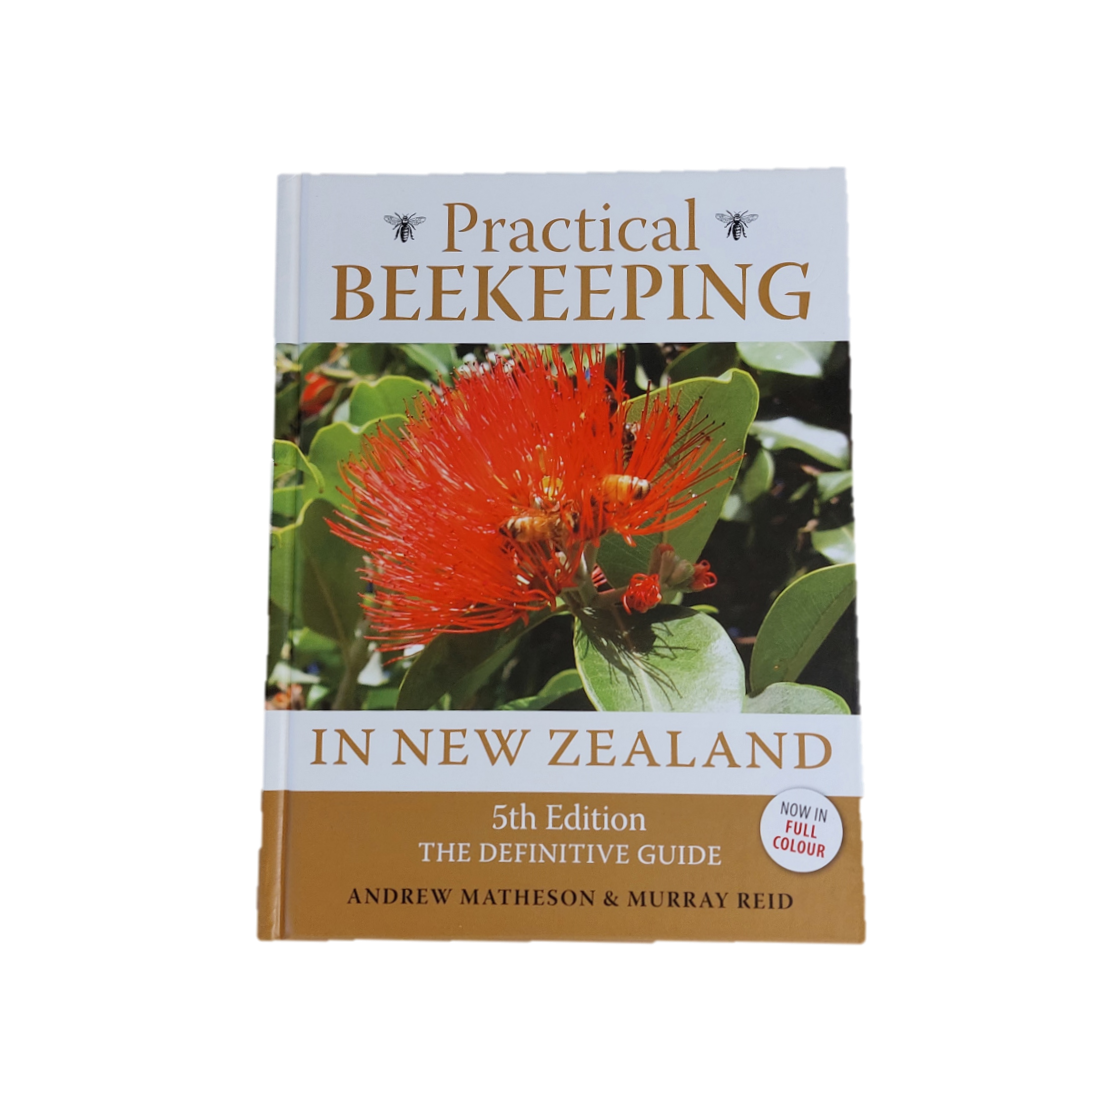 Practical Beekeeping in New Zealand